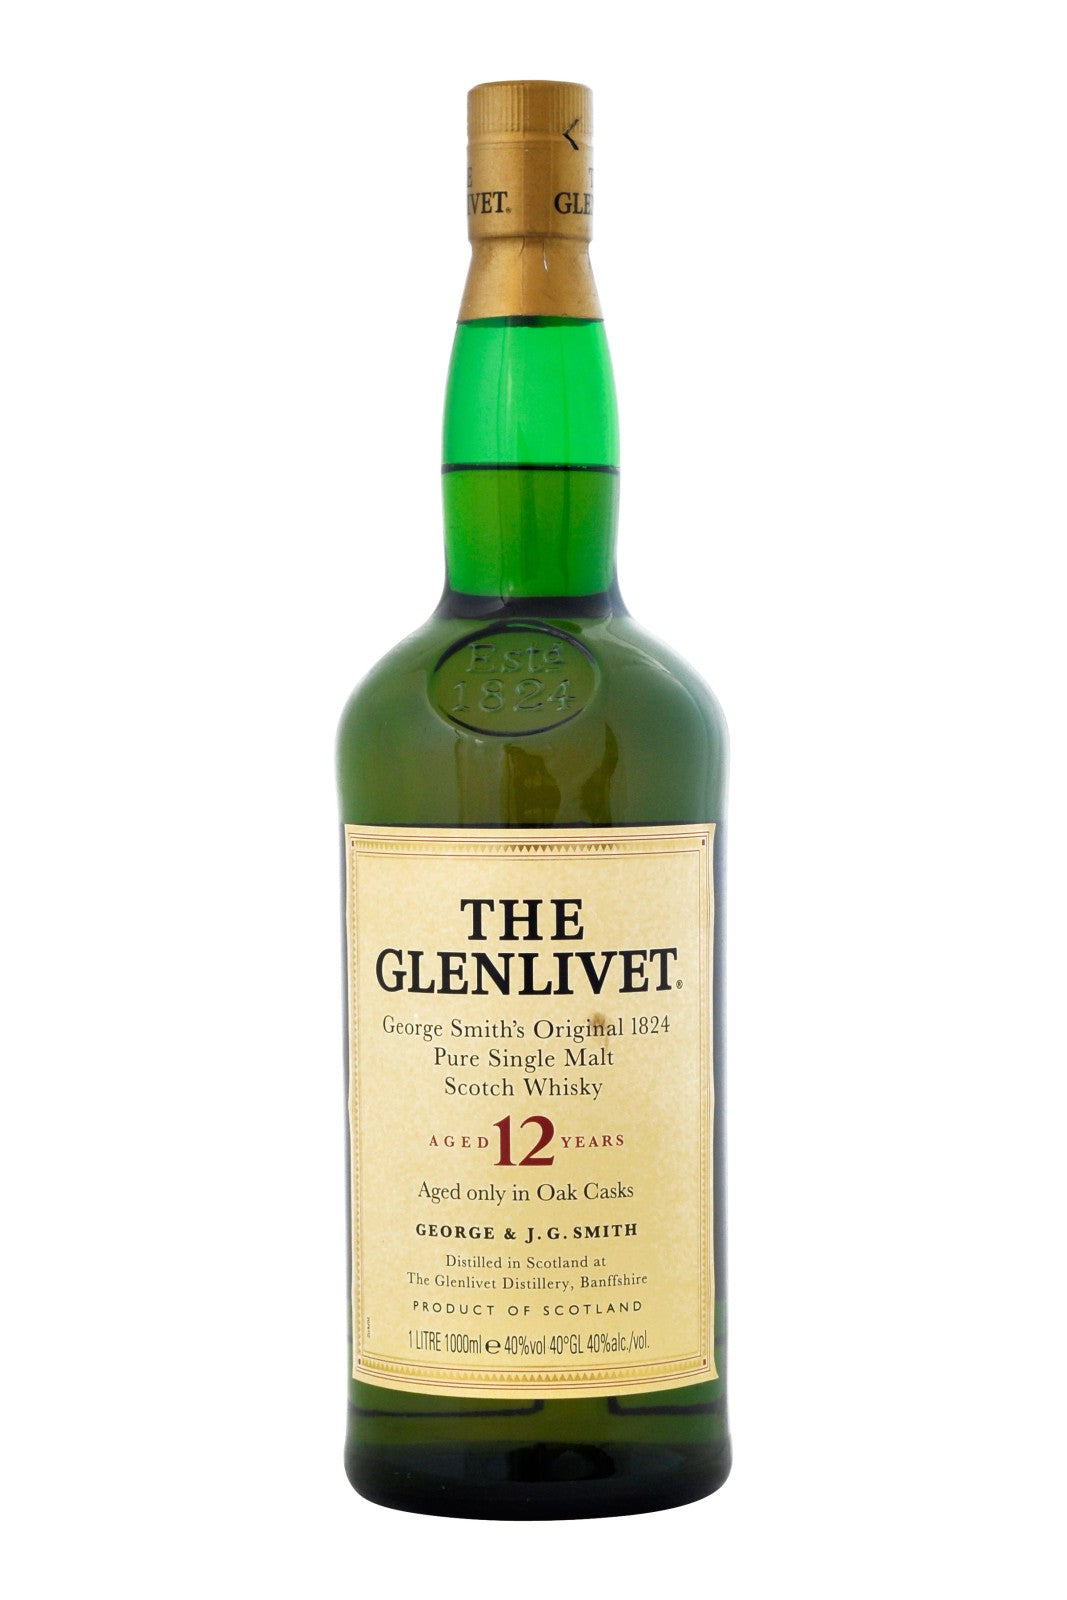 The Glenlivet 12 Year Old